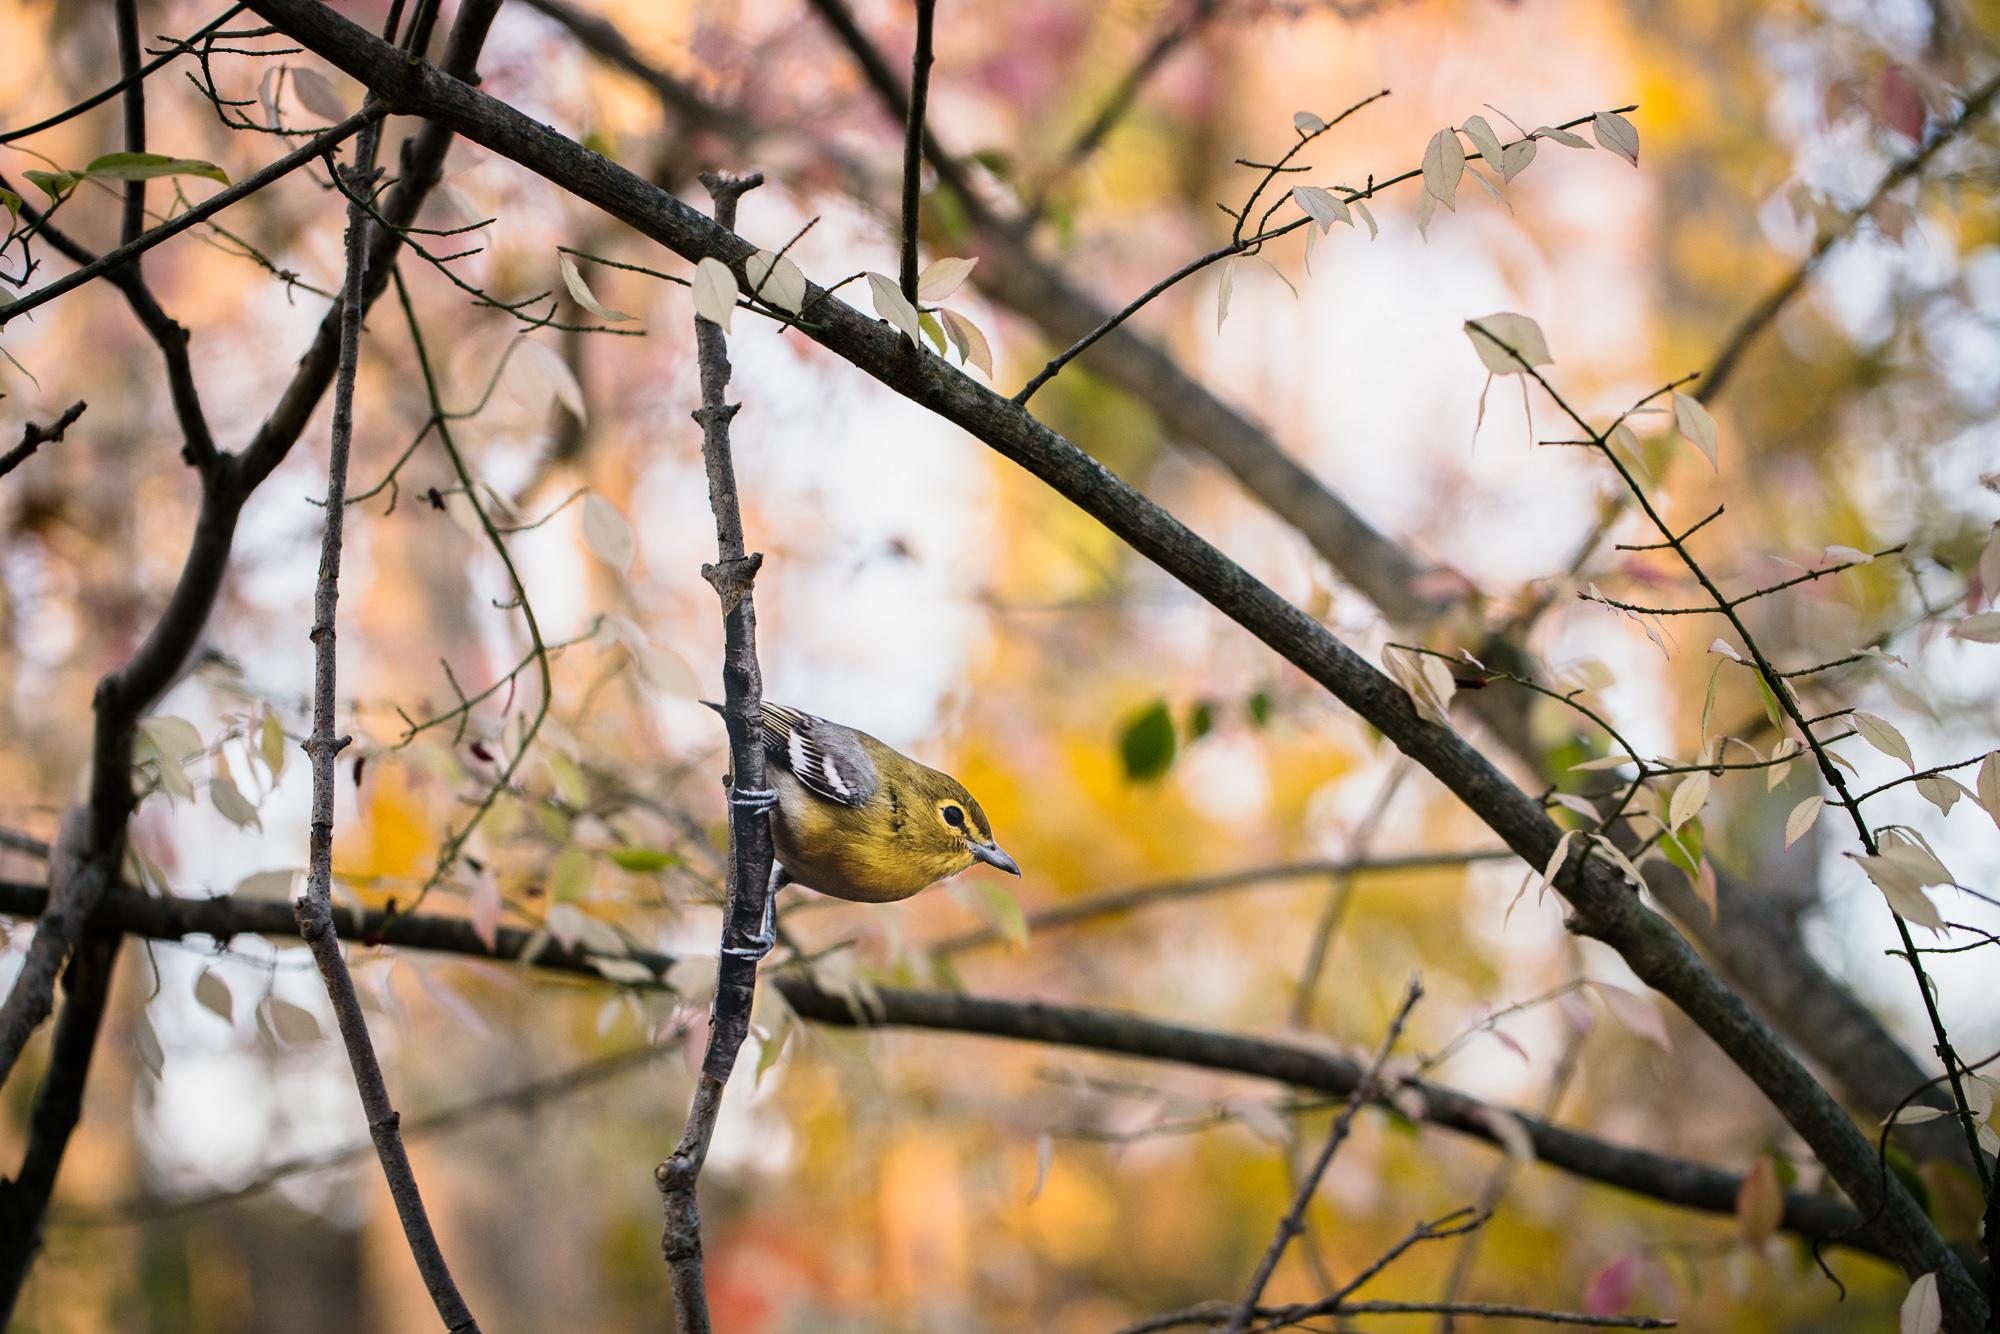 "Vireo de garganta amarilla" - fotografía original de aves de Matt Tillett